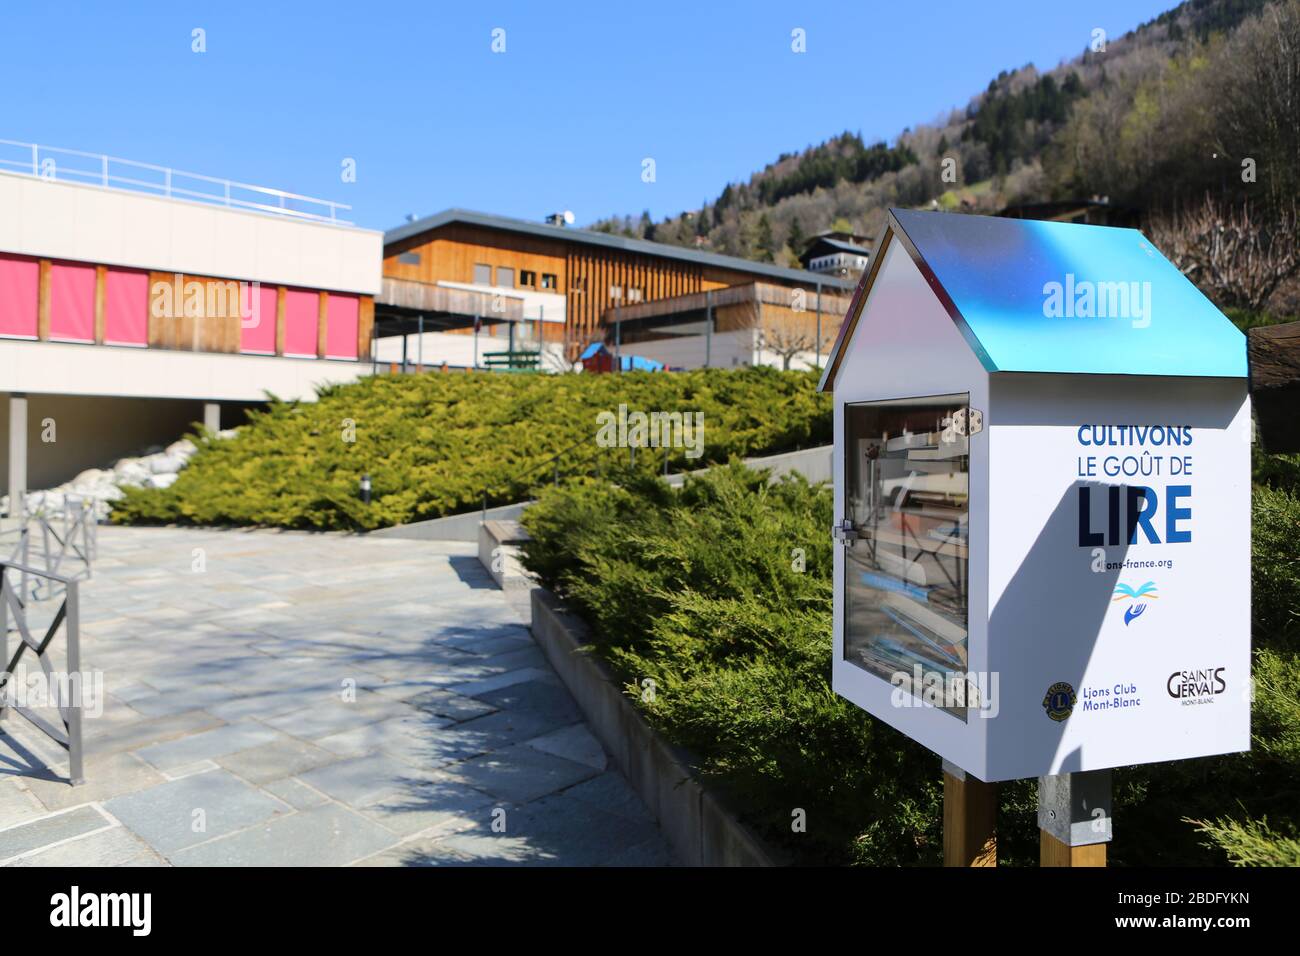 Boite à livres située devant un établissement scolaire. Saint-Gervais-les-Bains. Alta Savoia. Francia. Foto Stock